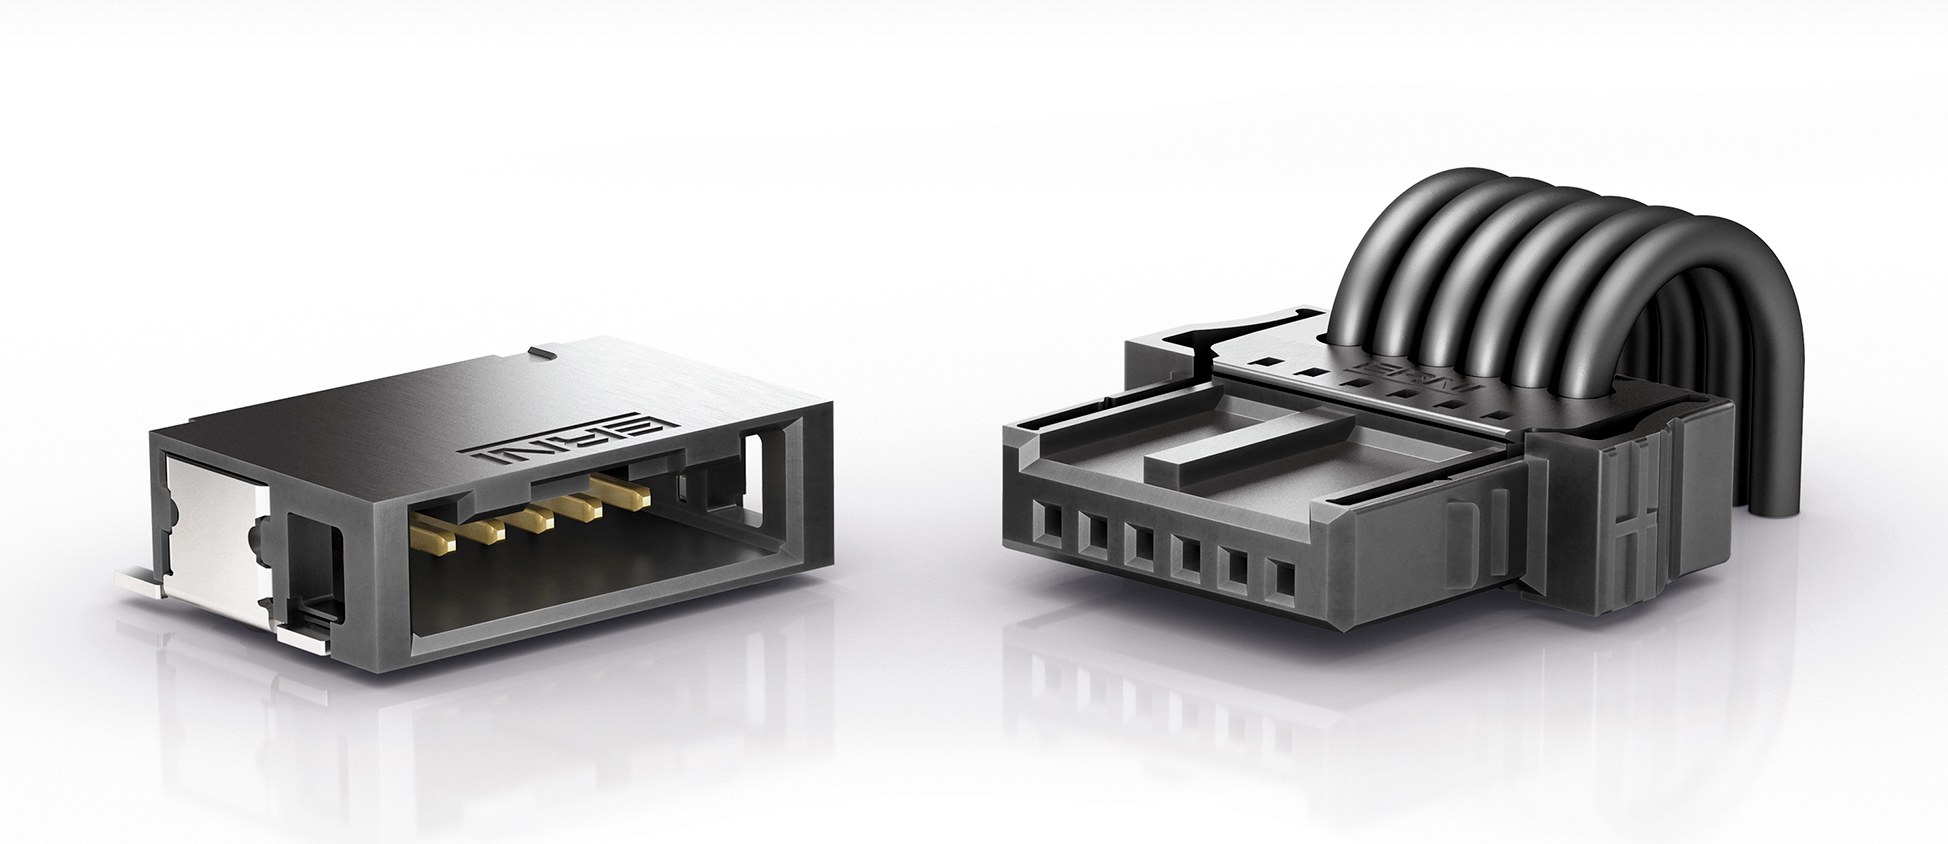 ERNI MicroBridge connectors for automotive designs